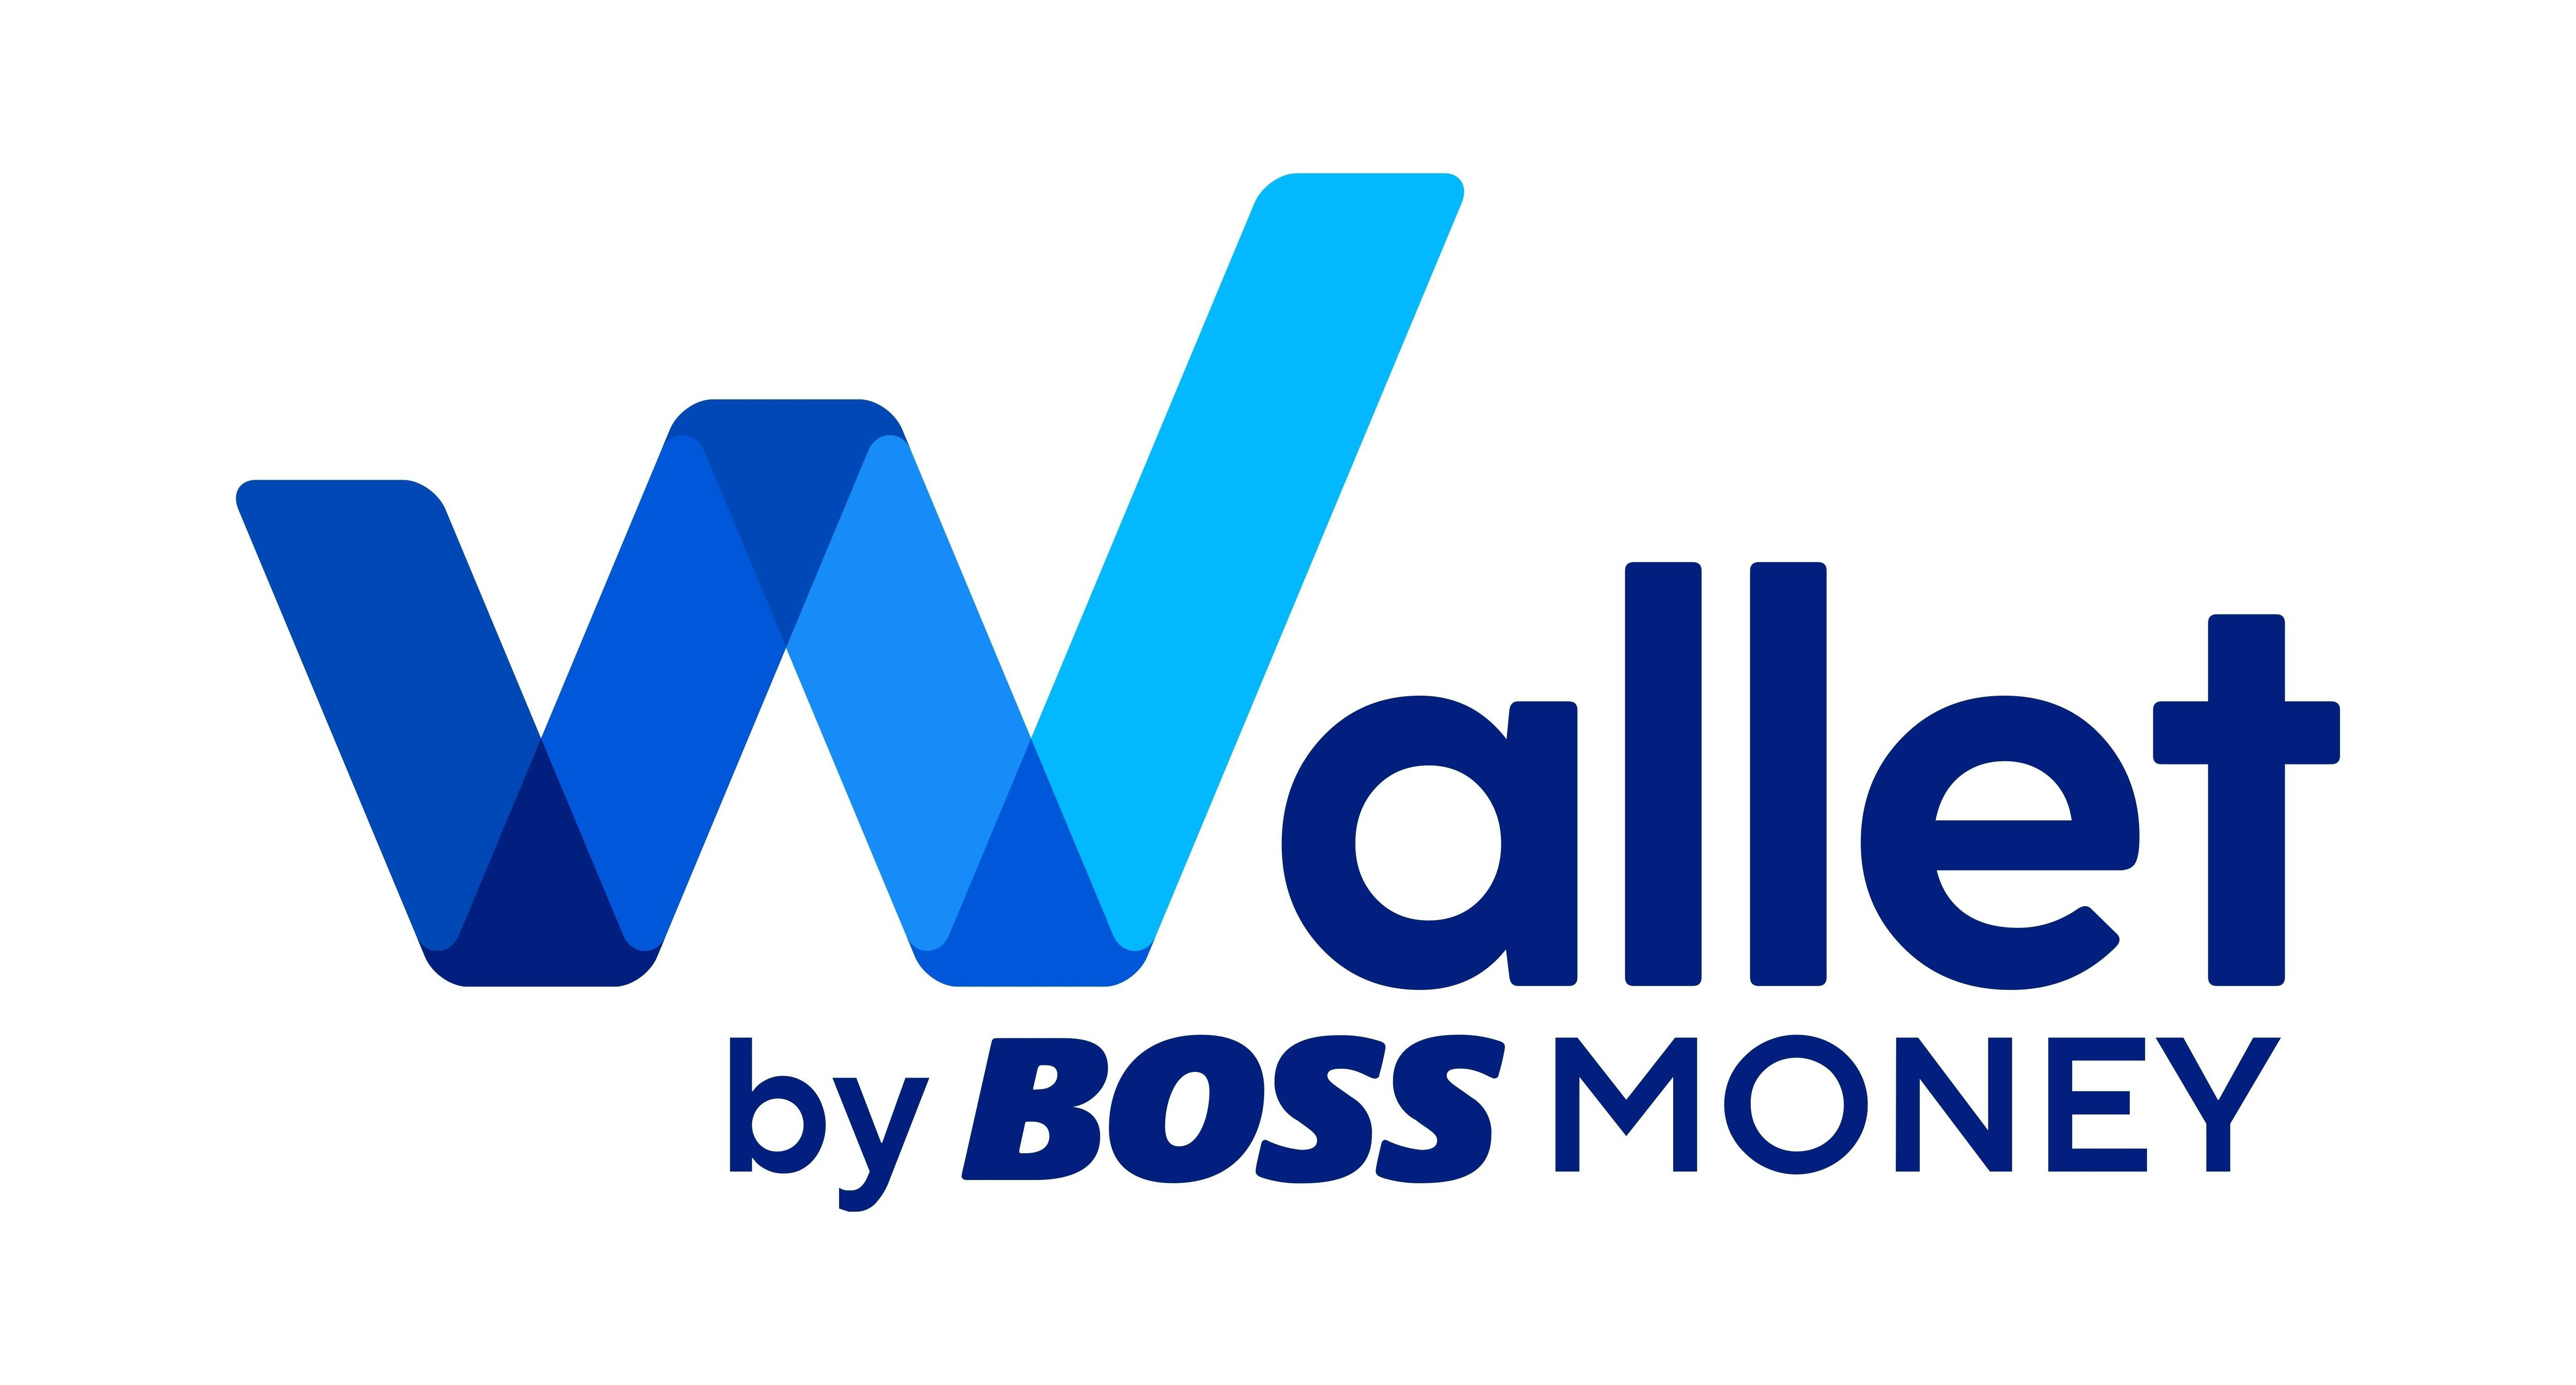  WALLET BY BOSS MONEY